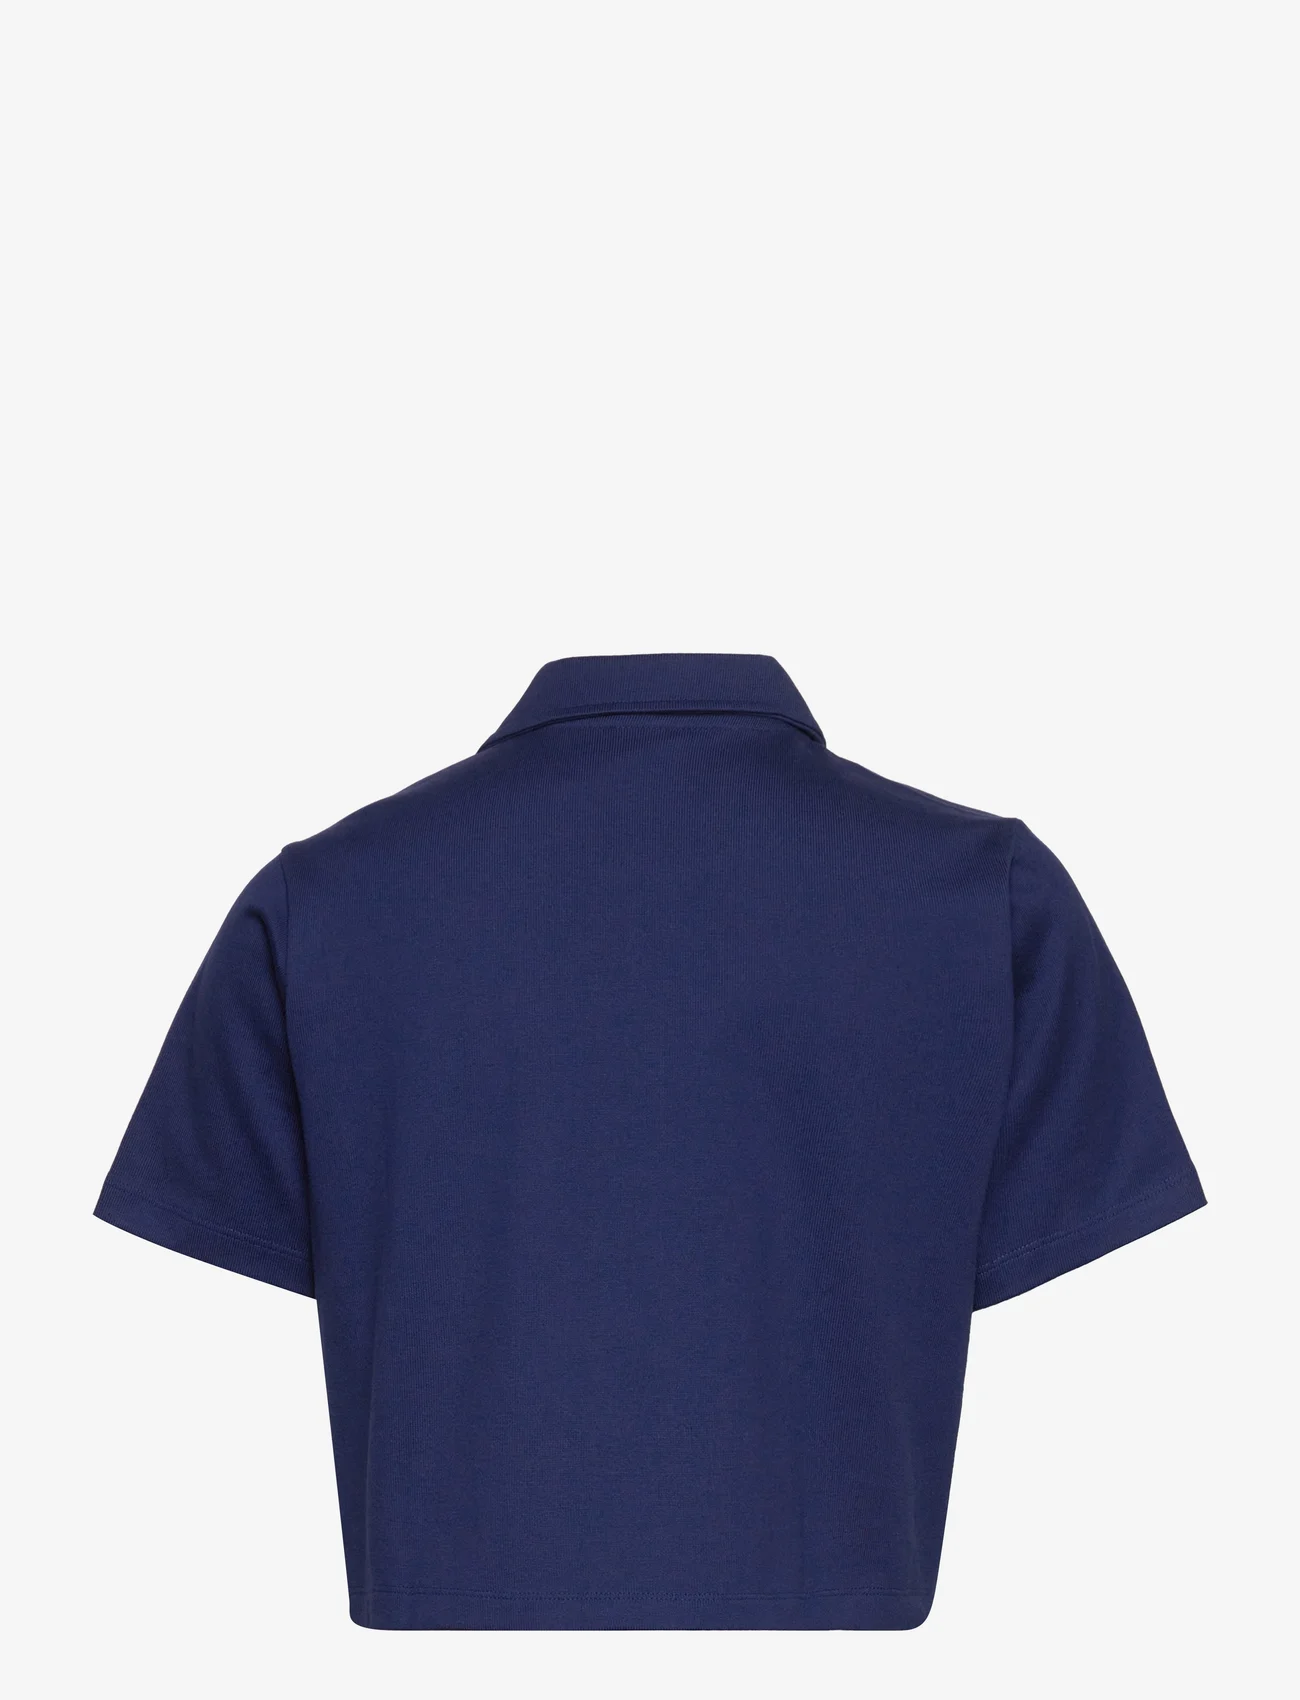 adidas Originals - Crop Zip Polo Shirt - laveste priser - ngtsky - 1